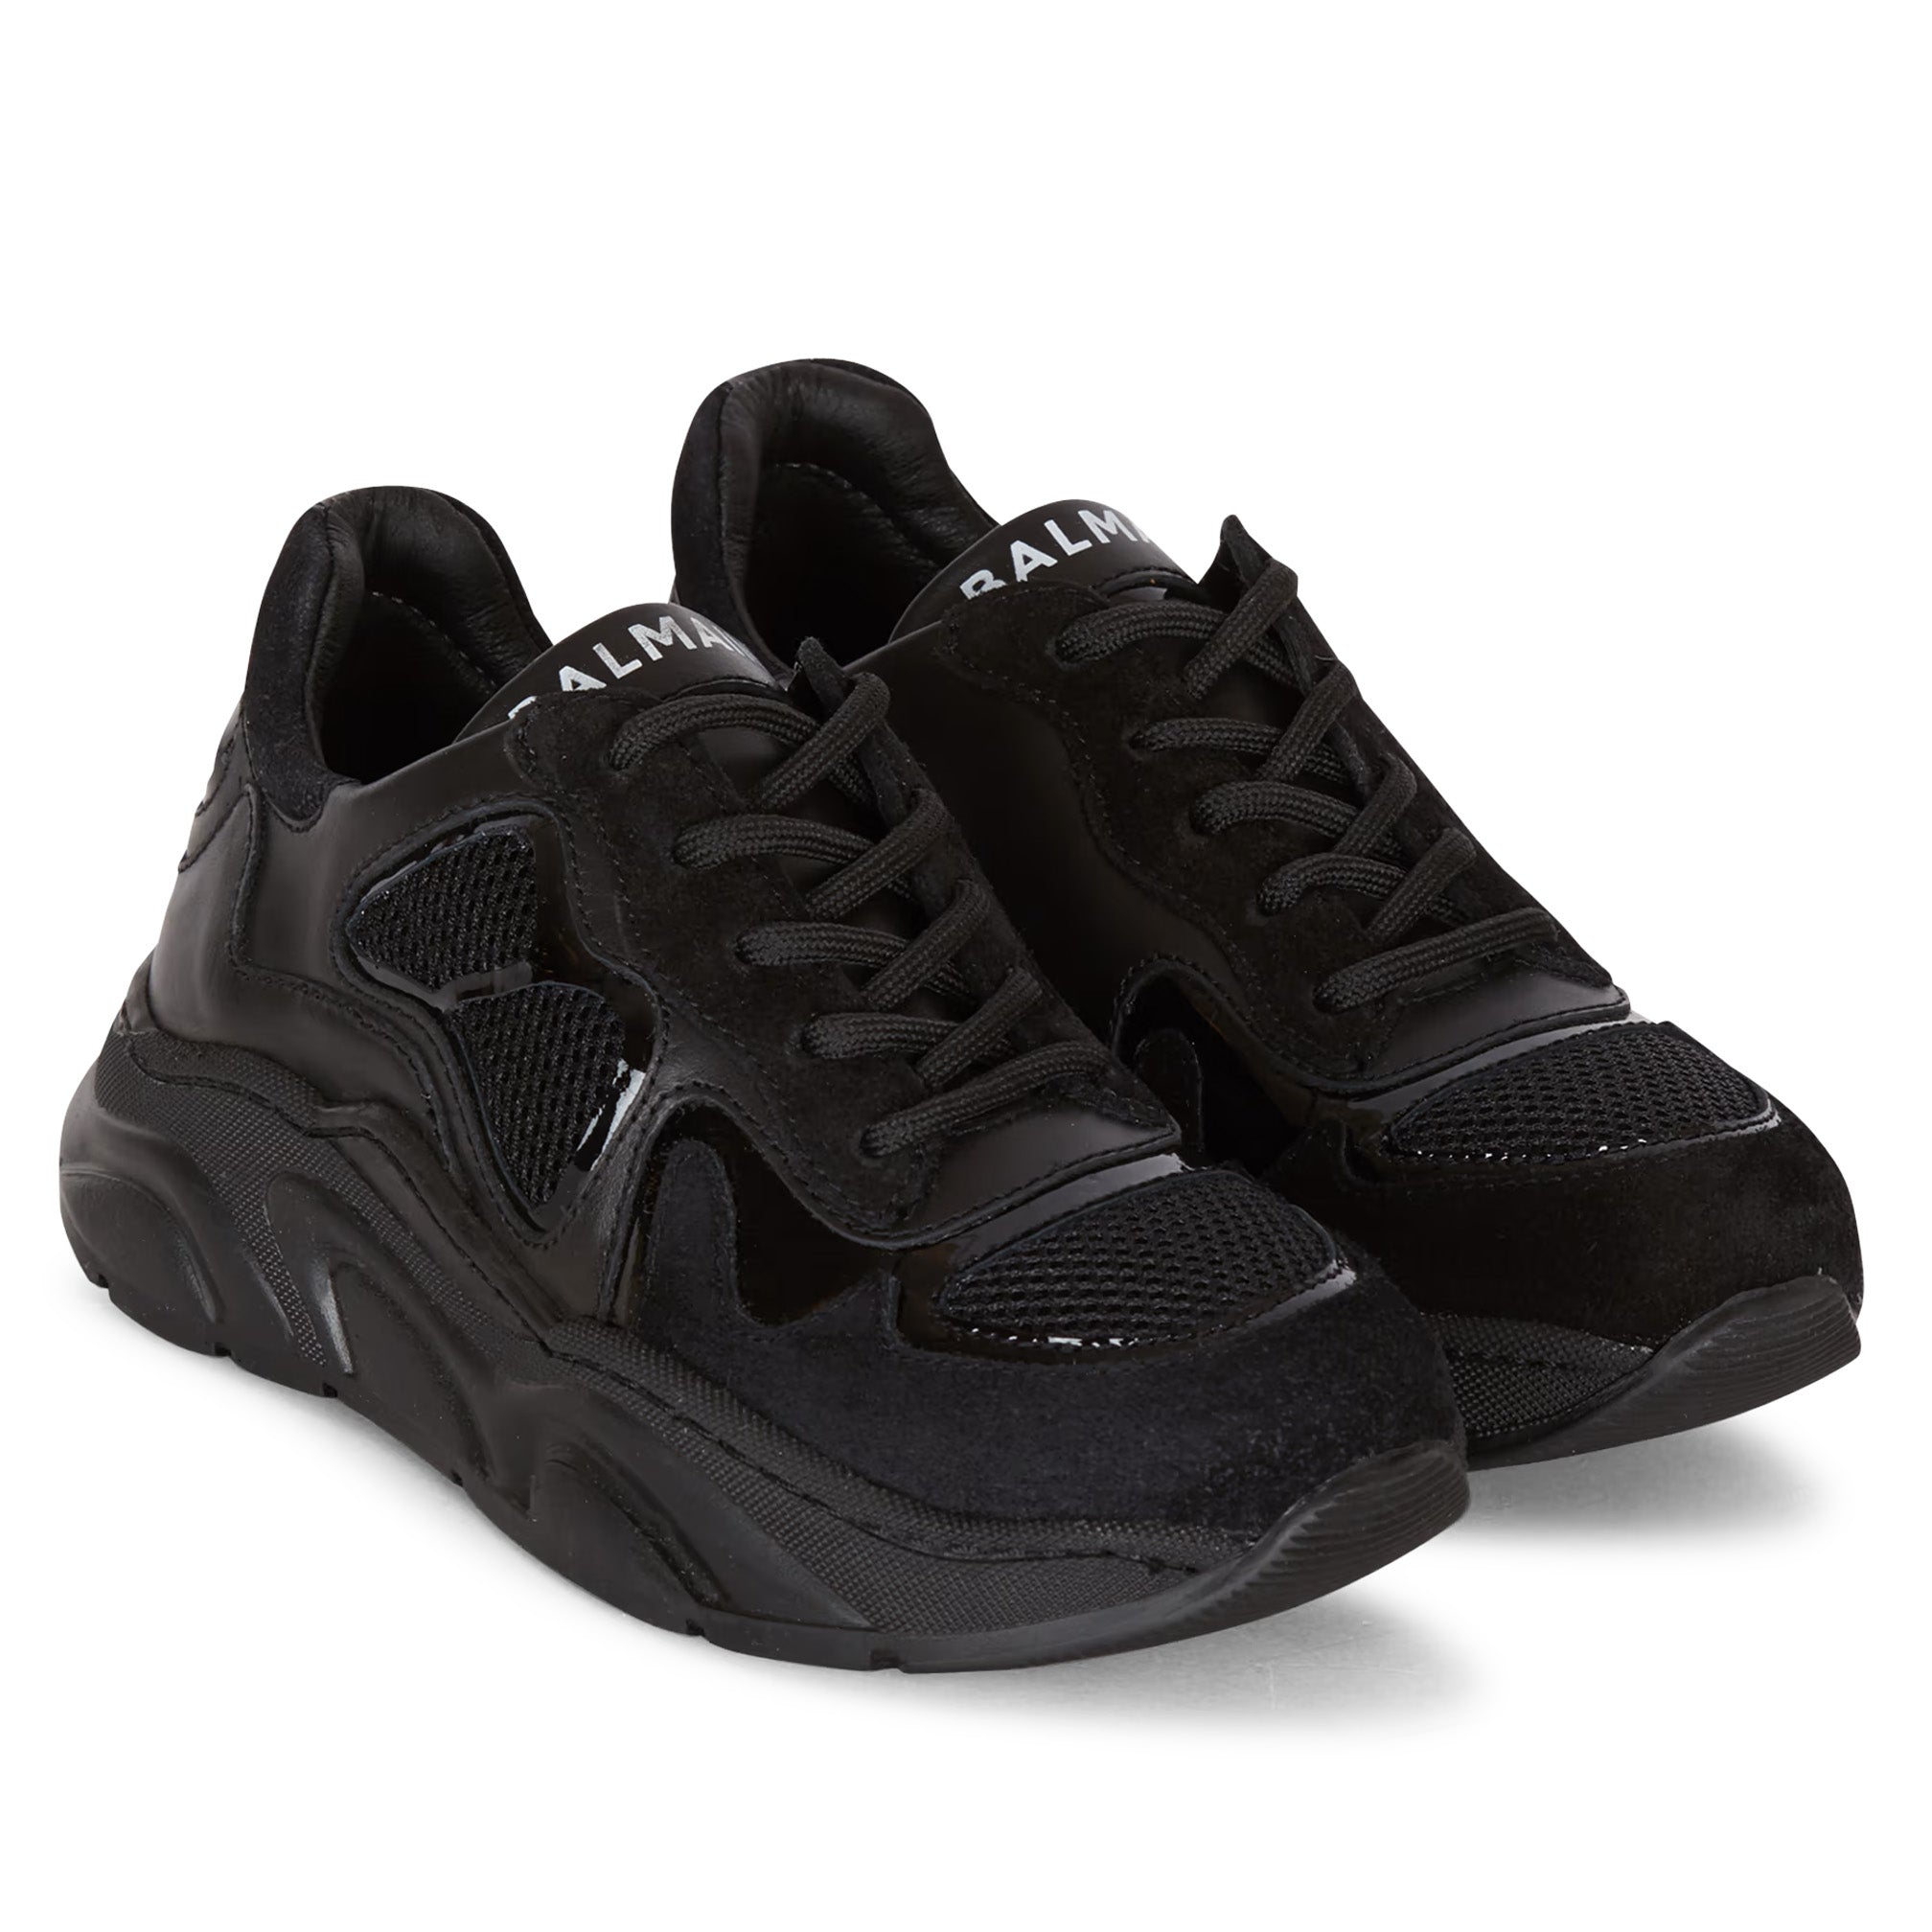 Balmain Black Patent Sneakers